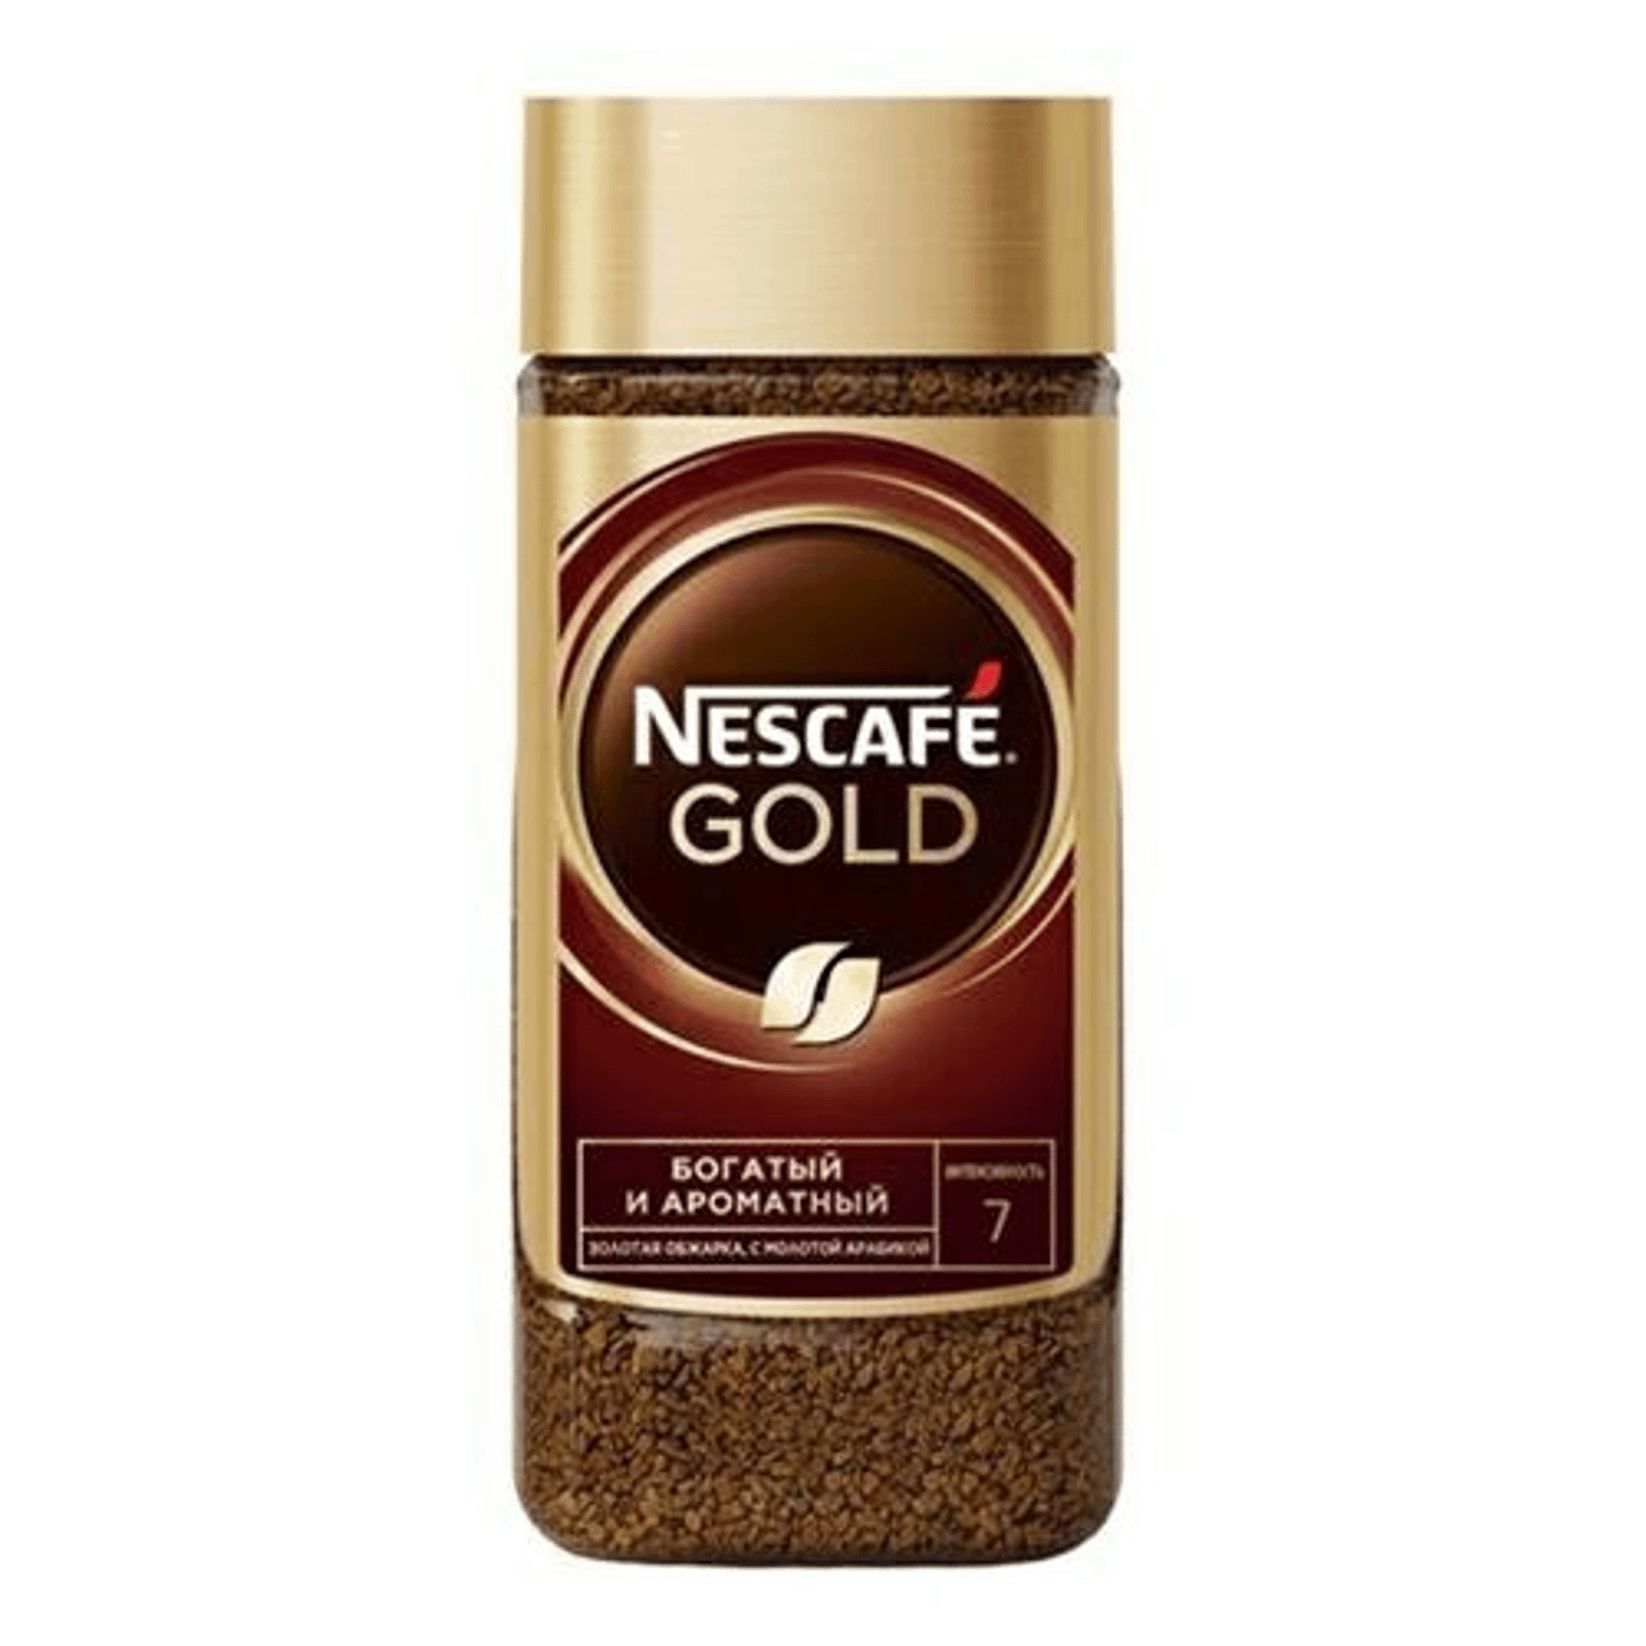 Купить nescafe растворимый кофе. Нескафе Голд 95 гр. Кофе Нескафе Голд 95г. Кофе Nescafe Gold, 95гр. Кофе Нескафе Голд 95г ст/б.